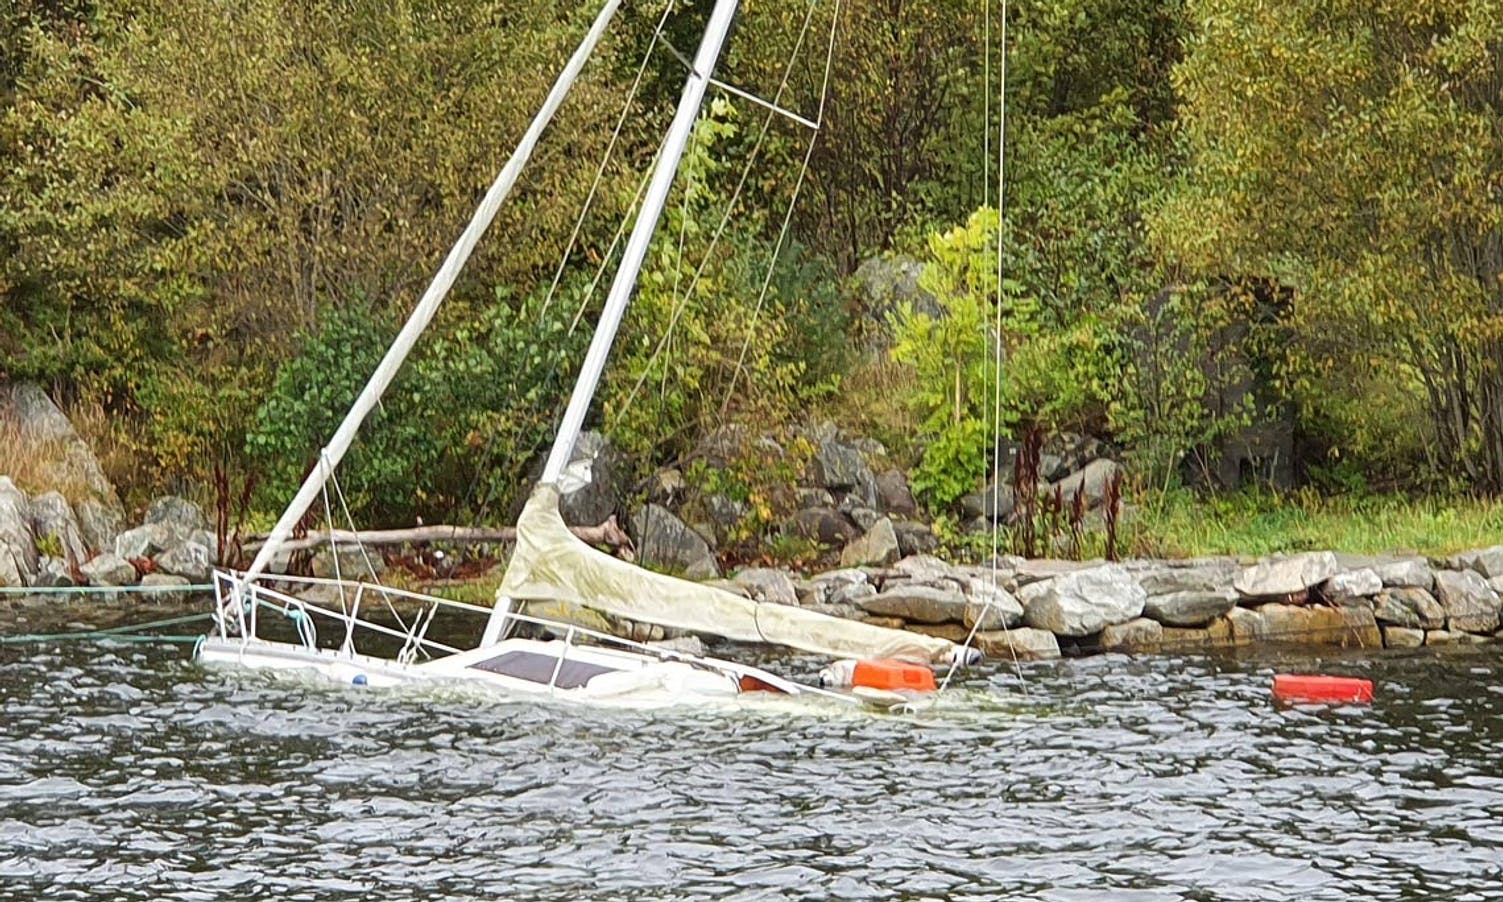 Leiter etter eigar: Seglbåt gått ned i Askvik